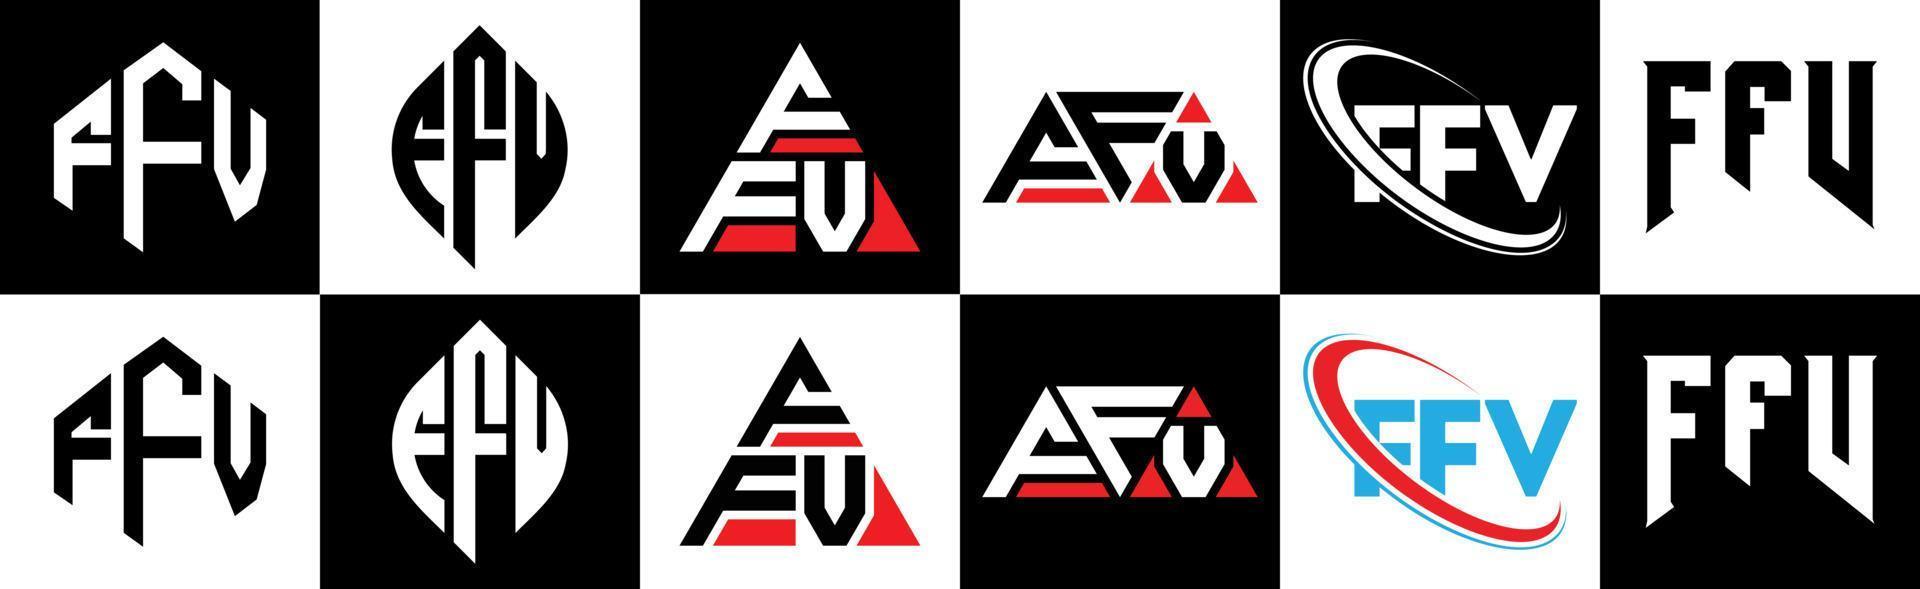 ffv-Buchstaben-Logo-Design in sechs Stilen. ffv Polygon, Kreis, Dreieck, Sechseck, flacher und einfacher Stil mit schwarz-weißem Buchstabenlogo in einer Zeichenfläche. ffv minimalistisches und klassisches Logo vektor